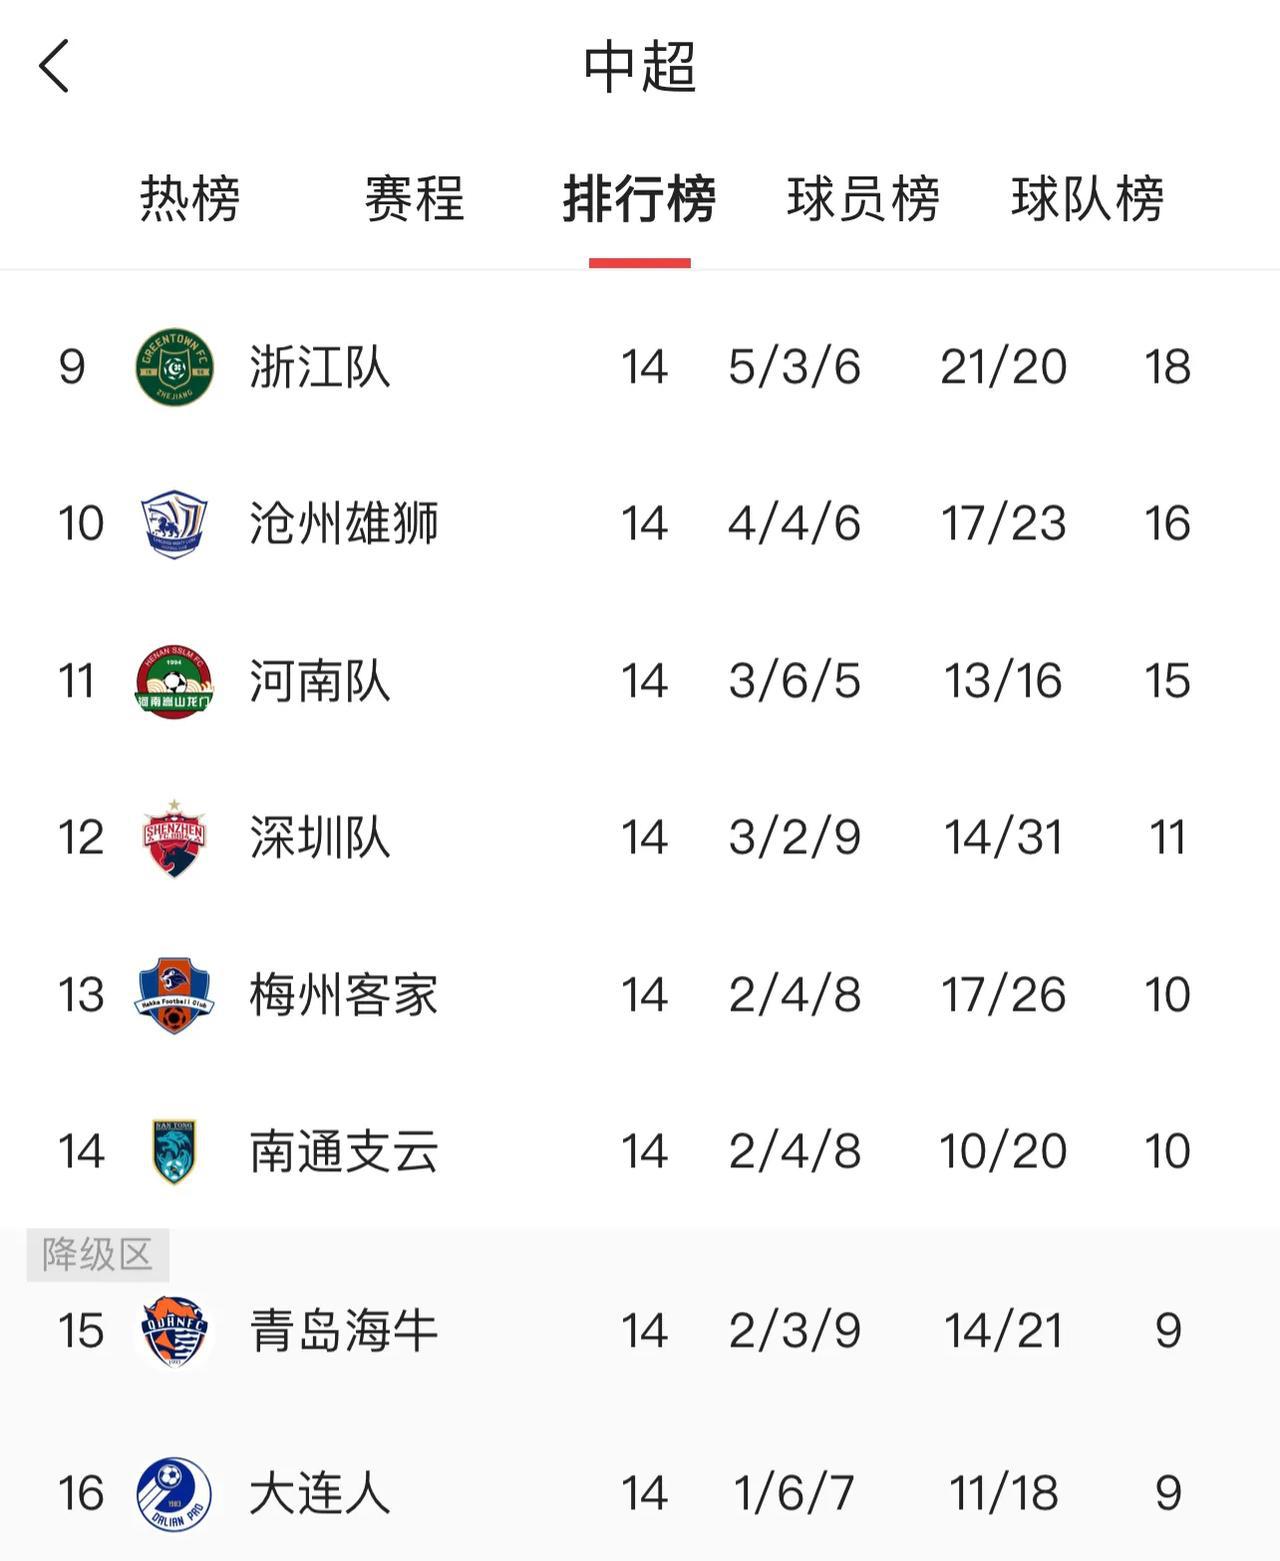 中超联赛过半，综合各方面分析！
一、夺冠球队
1、上海海港 80%，今年的海港顺(4)